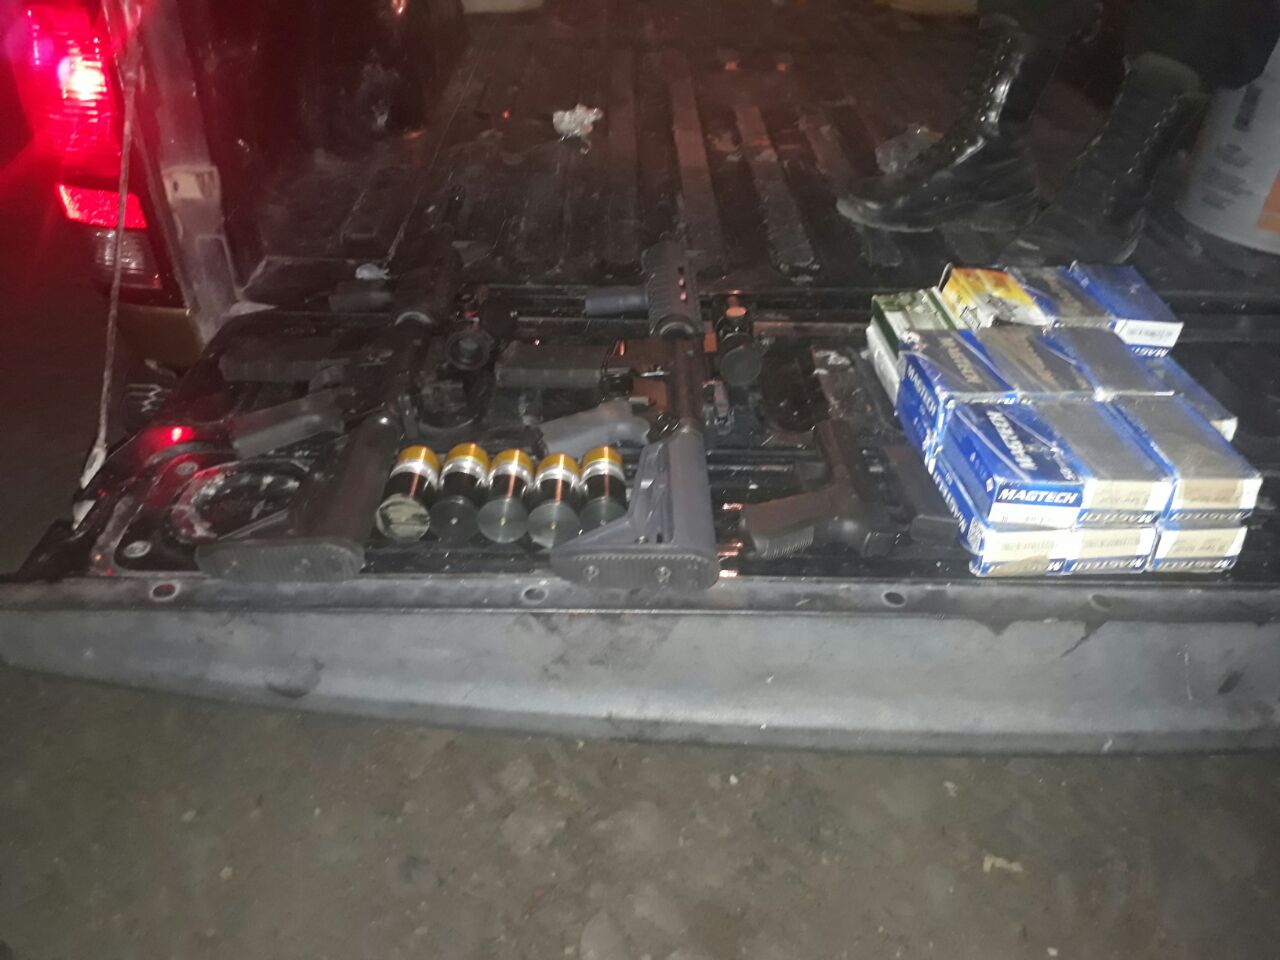 Armas y cartuchos útiles decomisados en Ameca, Jalisco